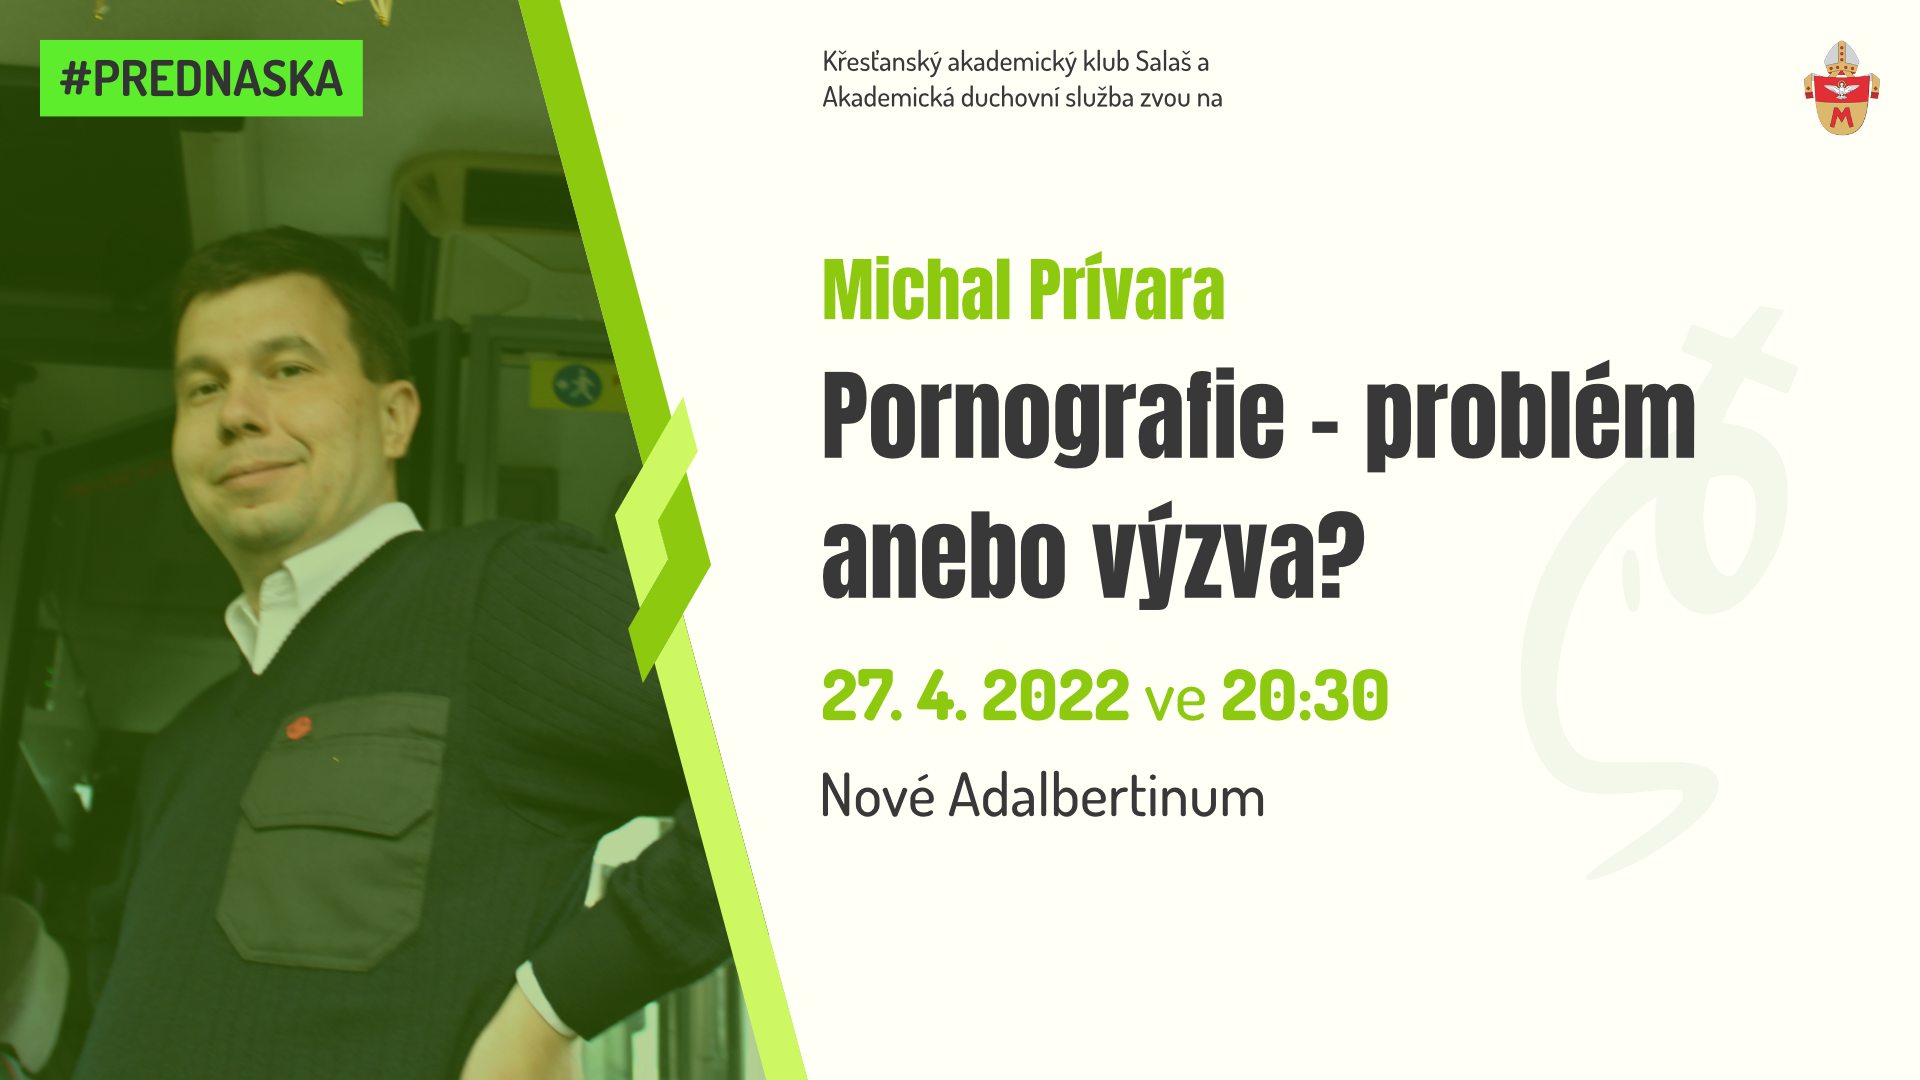 Michal Prívara - Pornografie - problém nebo výzva?